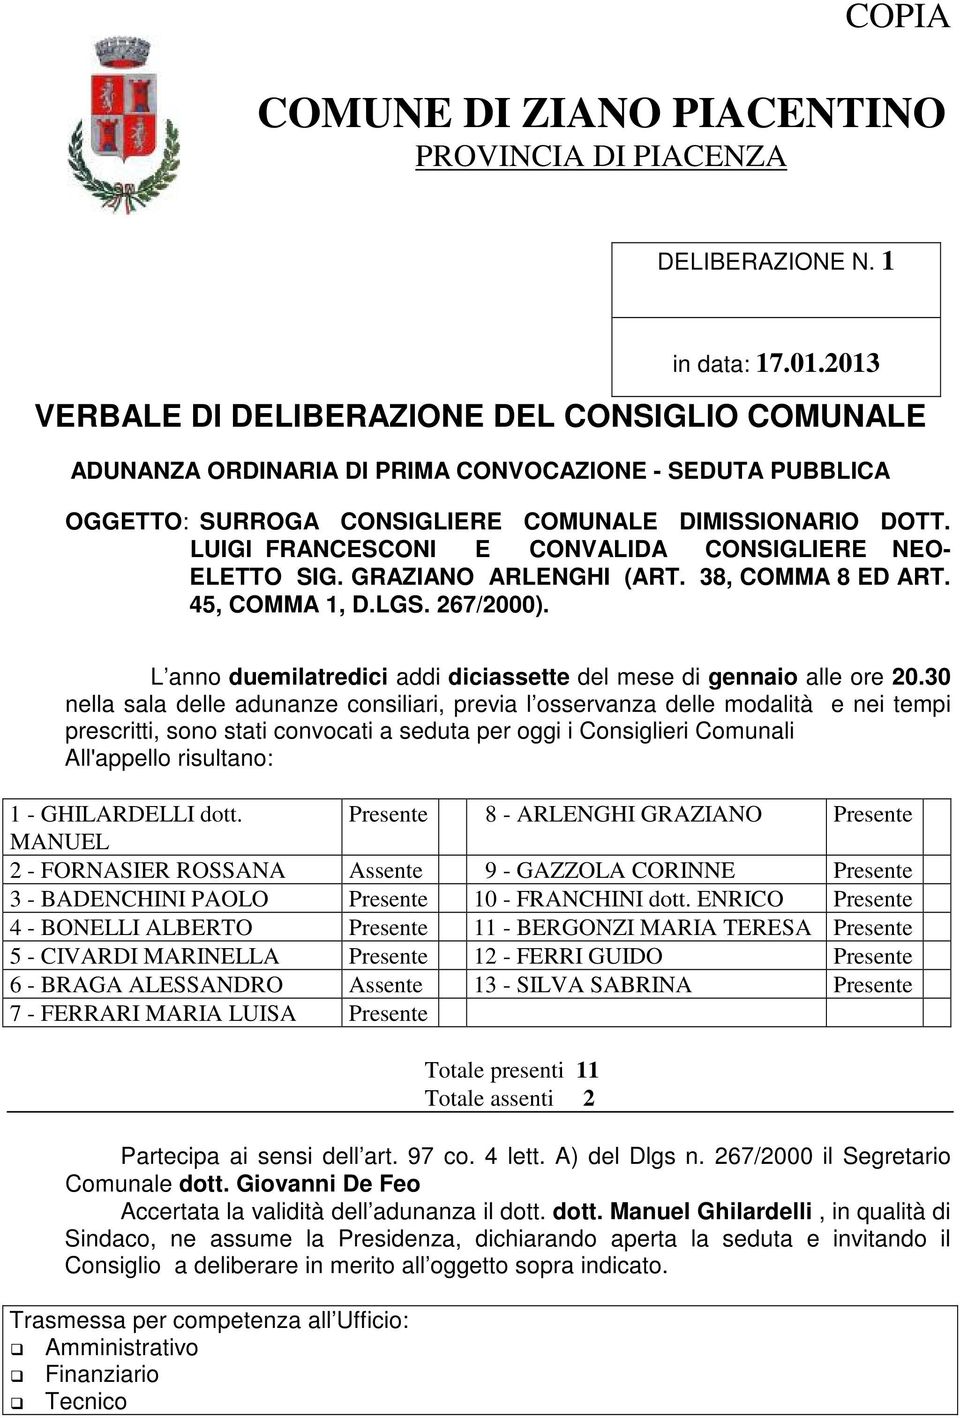 LUIGI FRANCESCONI E CONVALIDA CONSIGLIERE NEO- ELETTO SIG. GRAZIANO ARLENGHI (ART. 38, COMMA 8 ED ART. 45, COMMA 1, D.LGS. 267/2000).